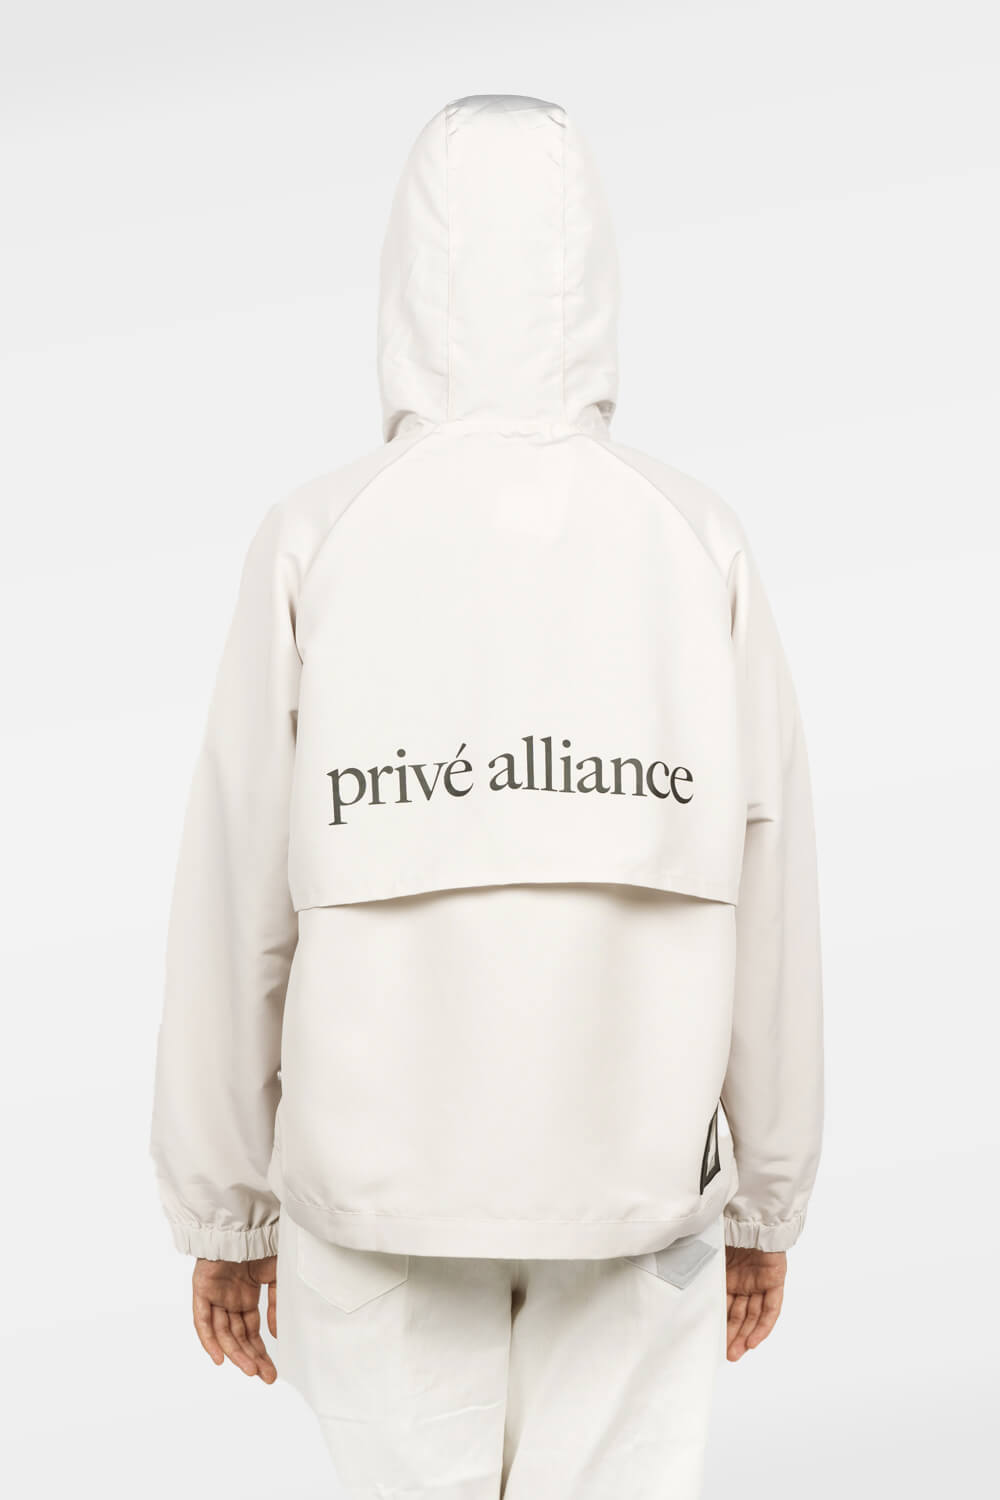 Privé Alliance Women's Stepout Raincoat BEIGE